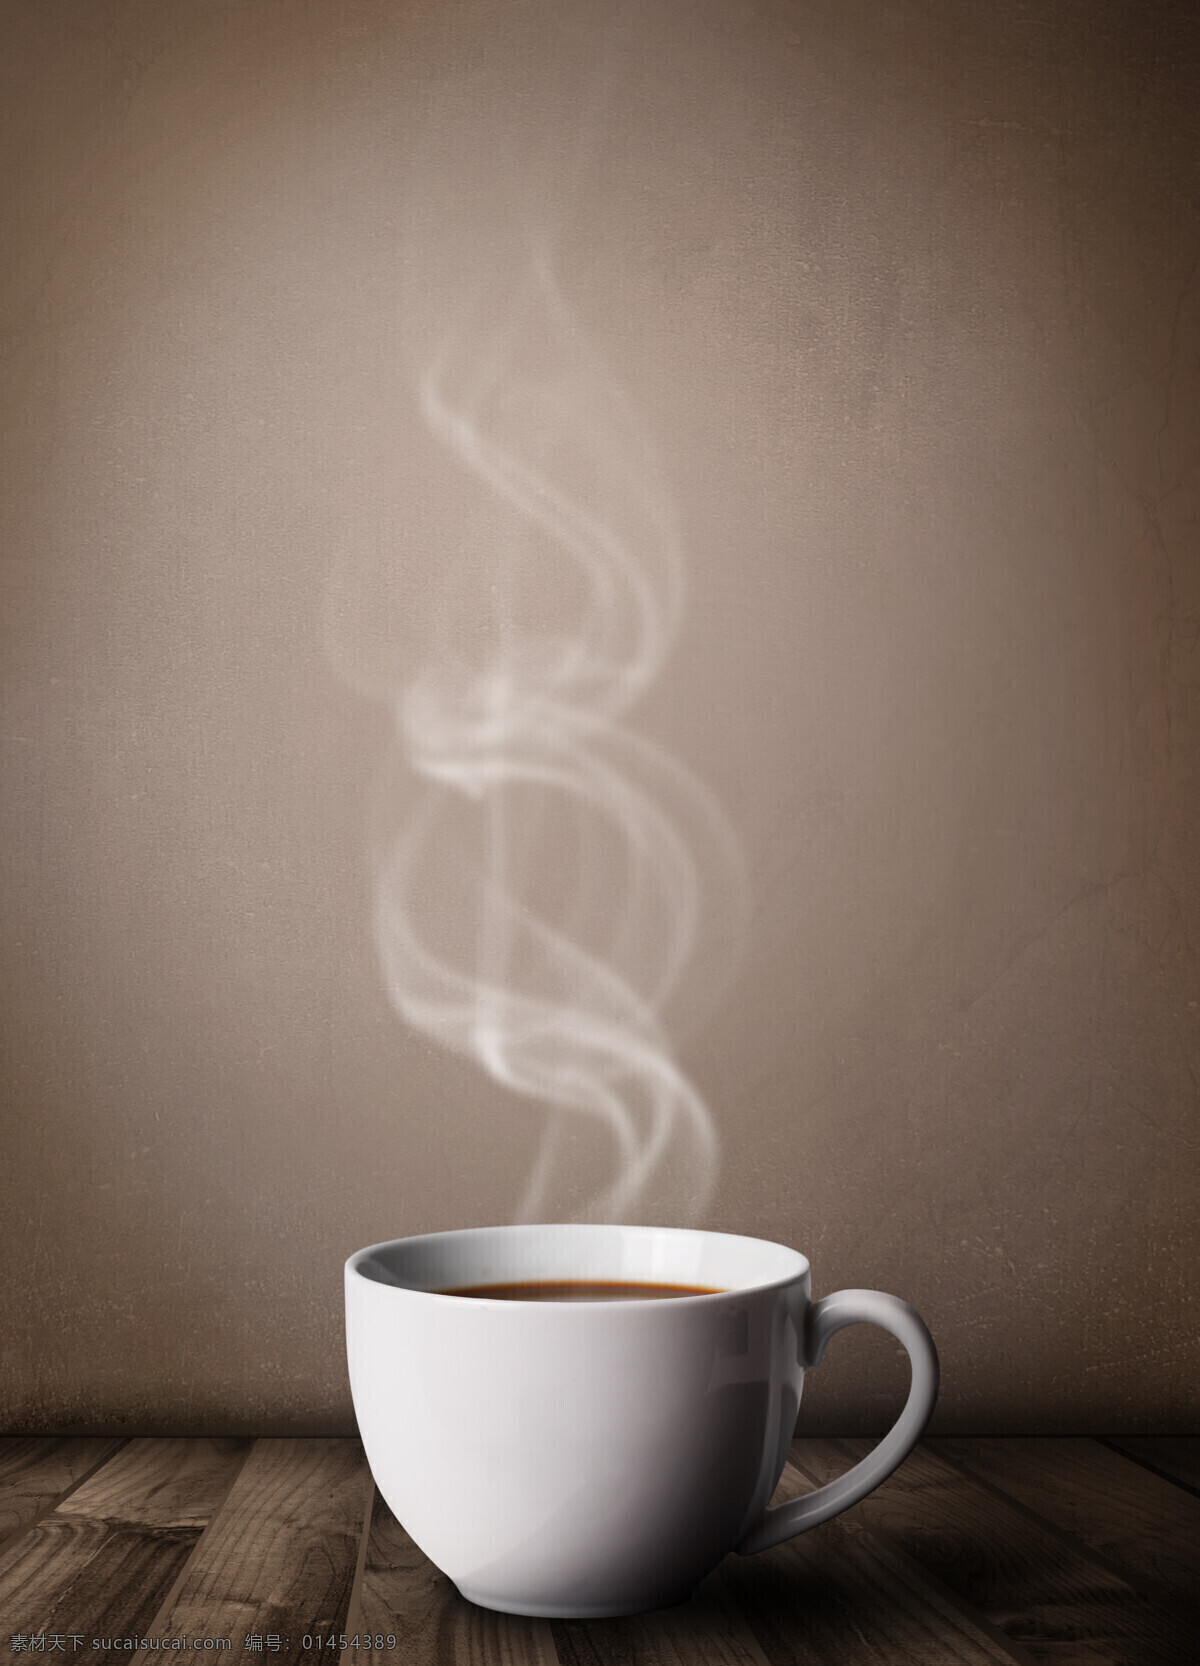 咖啡与蒸汽 咖啡 蒸汽 杯子 摩卡咖啡 中式咖啡 餐饮美食 饮料酒水